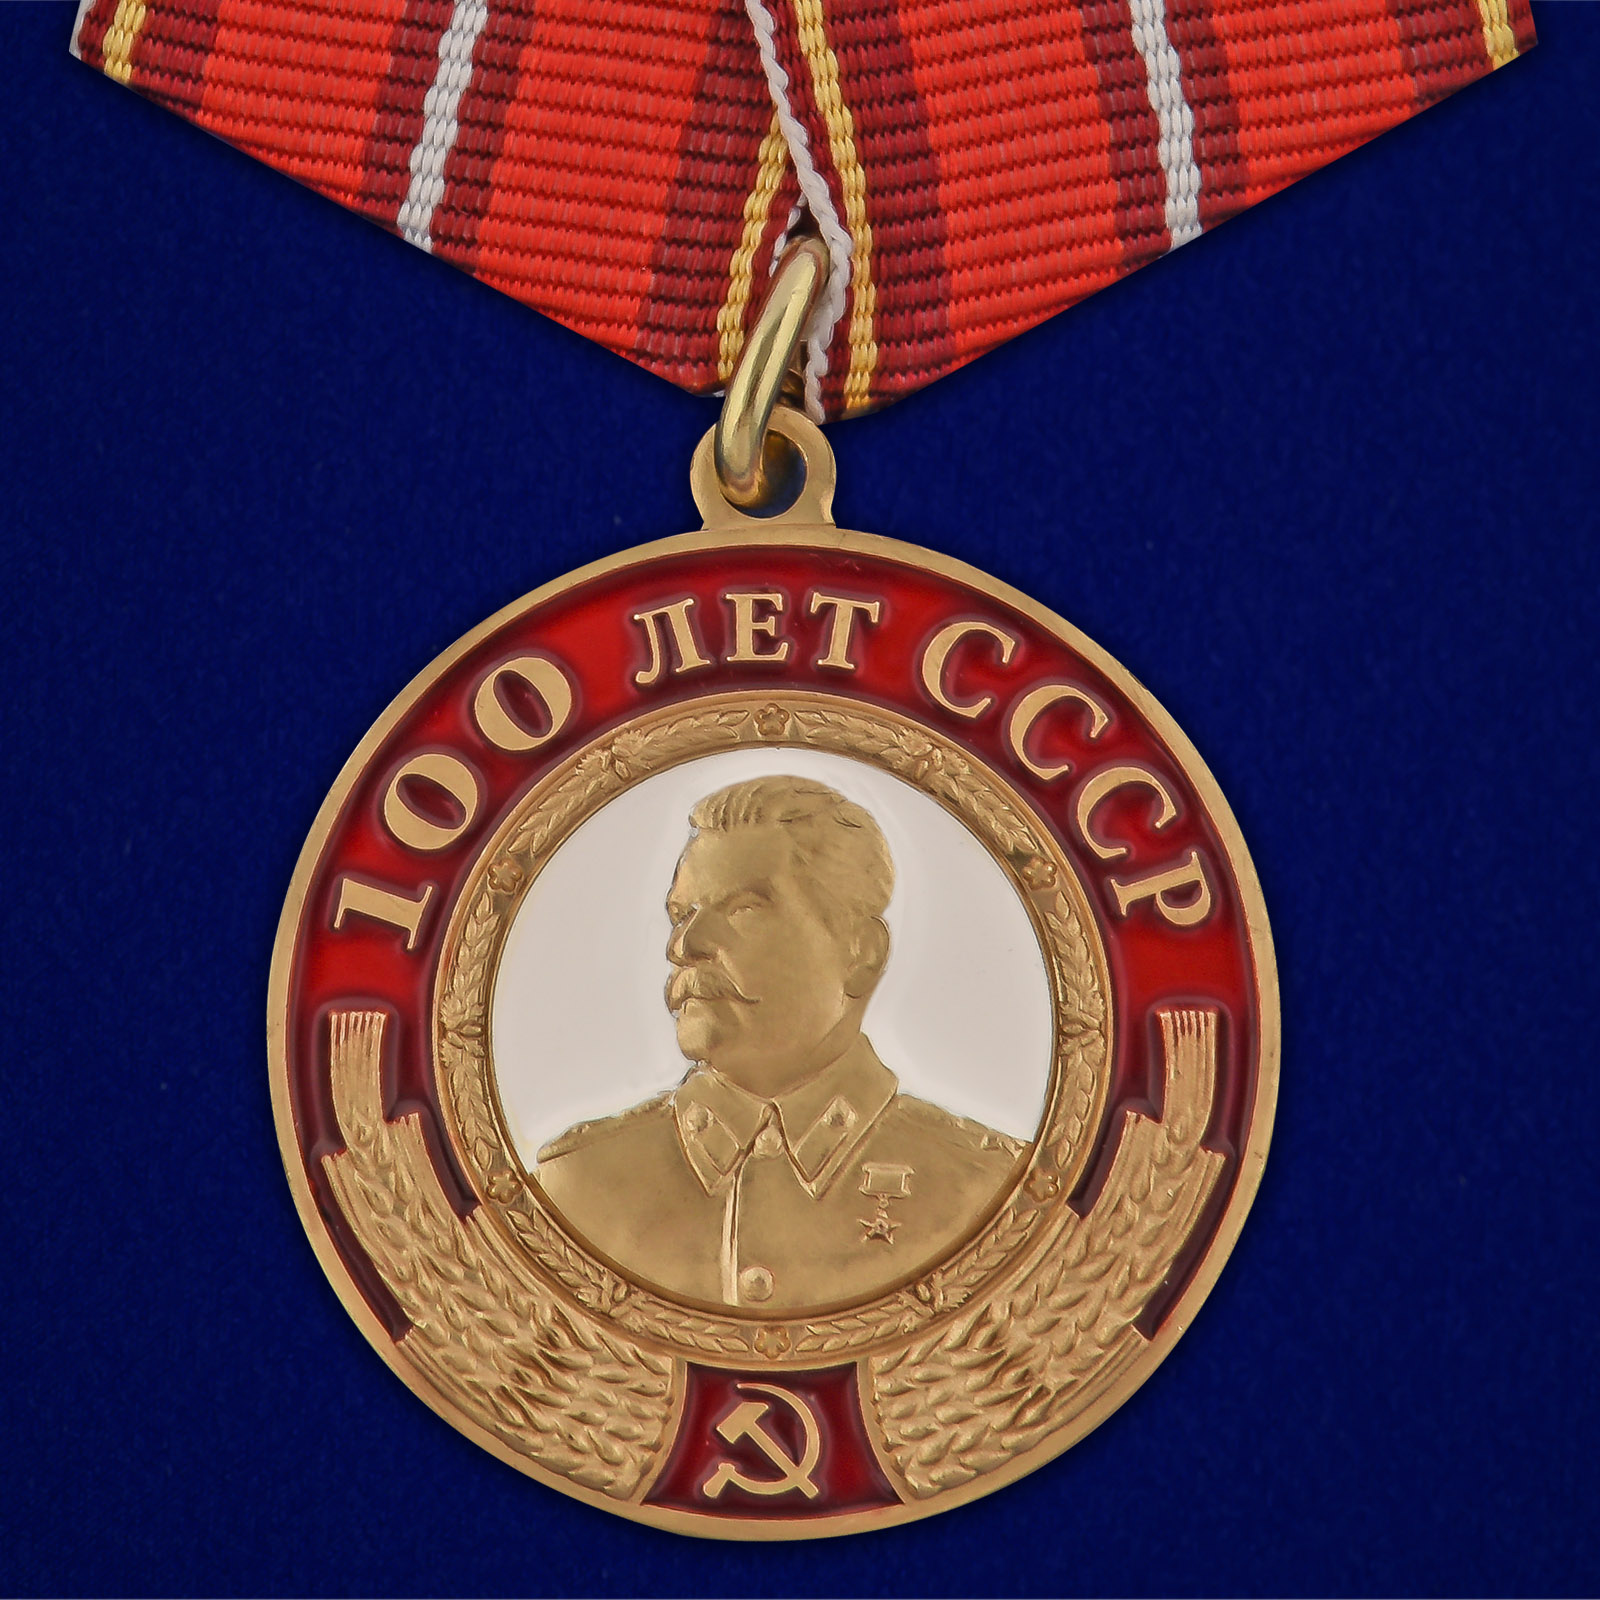 Купить медаль со Сталиным 100 лет СССР с доставкой